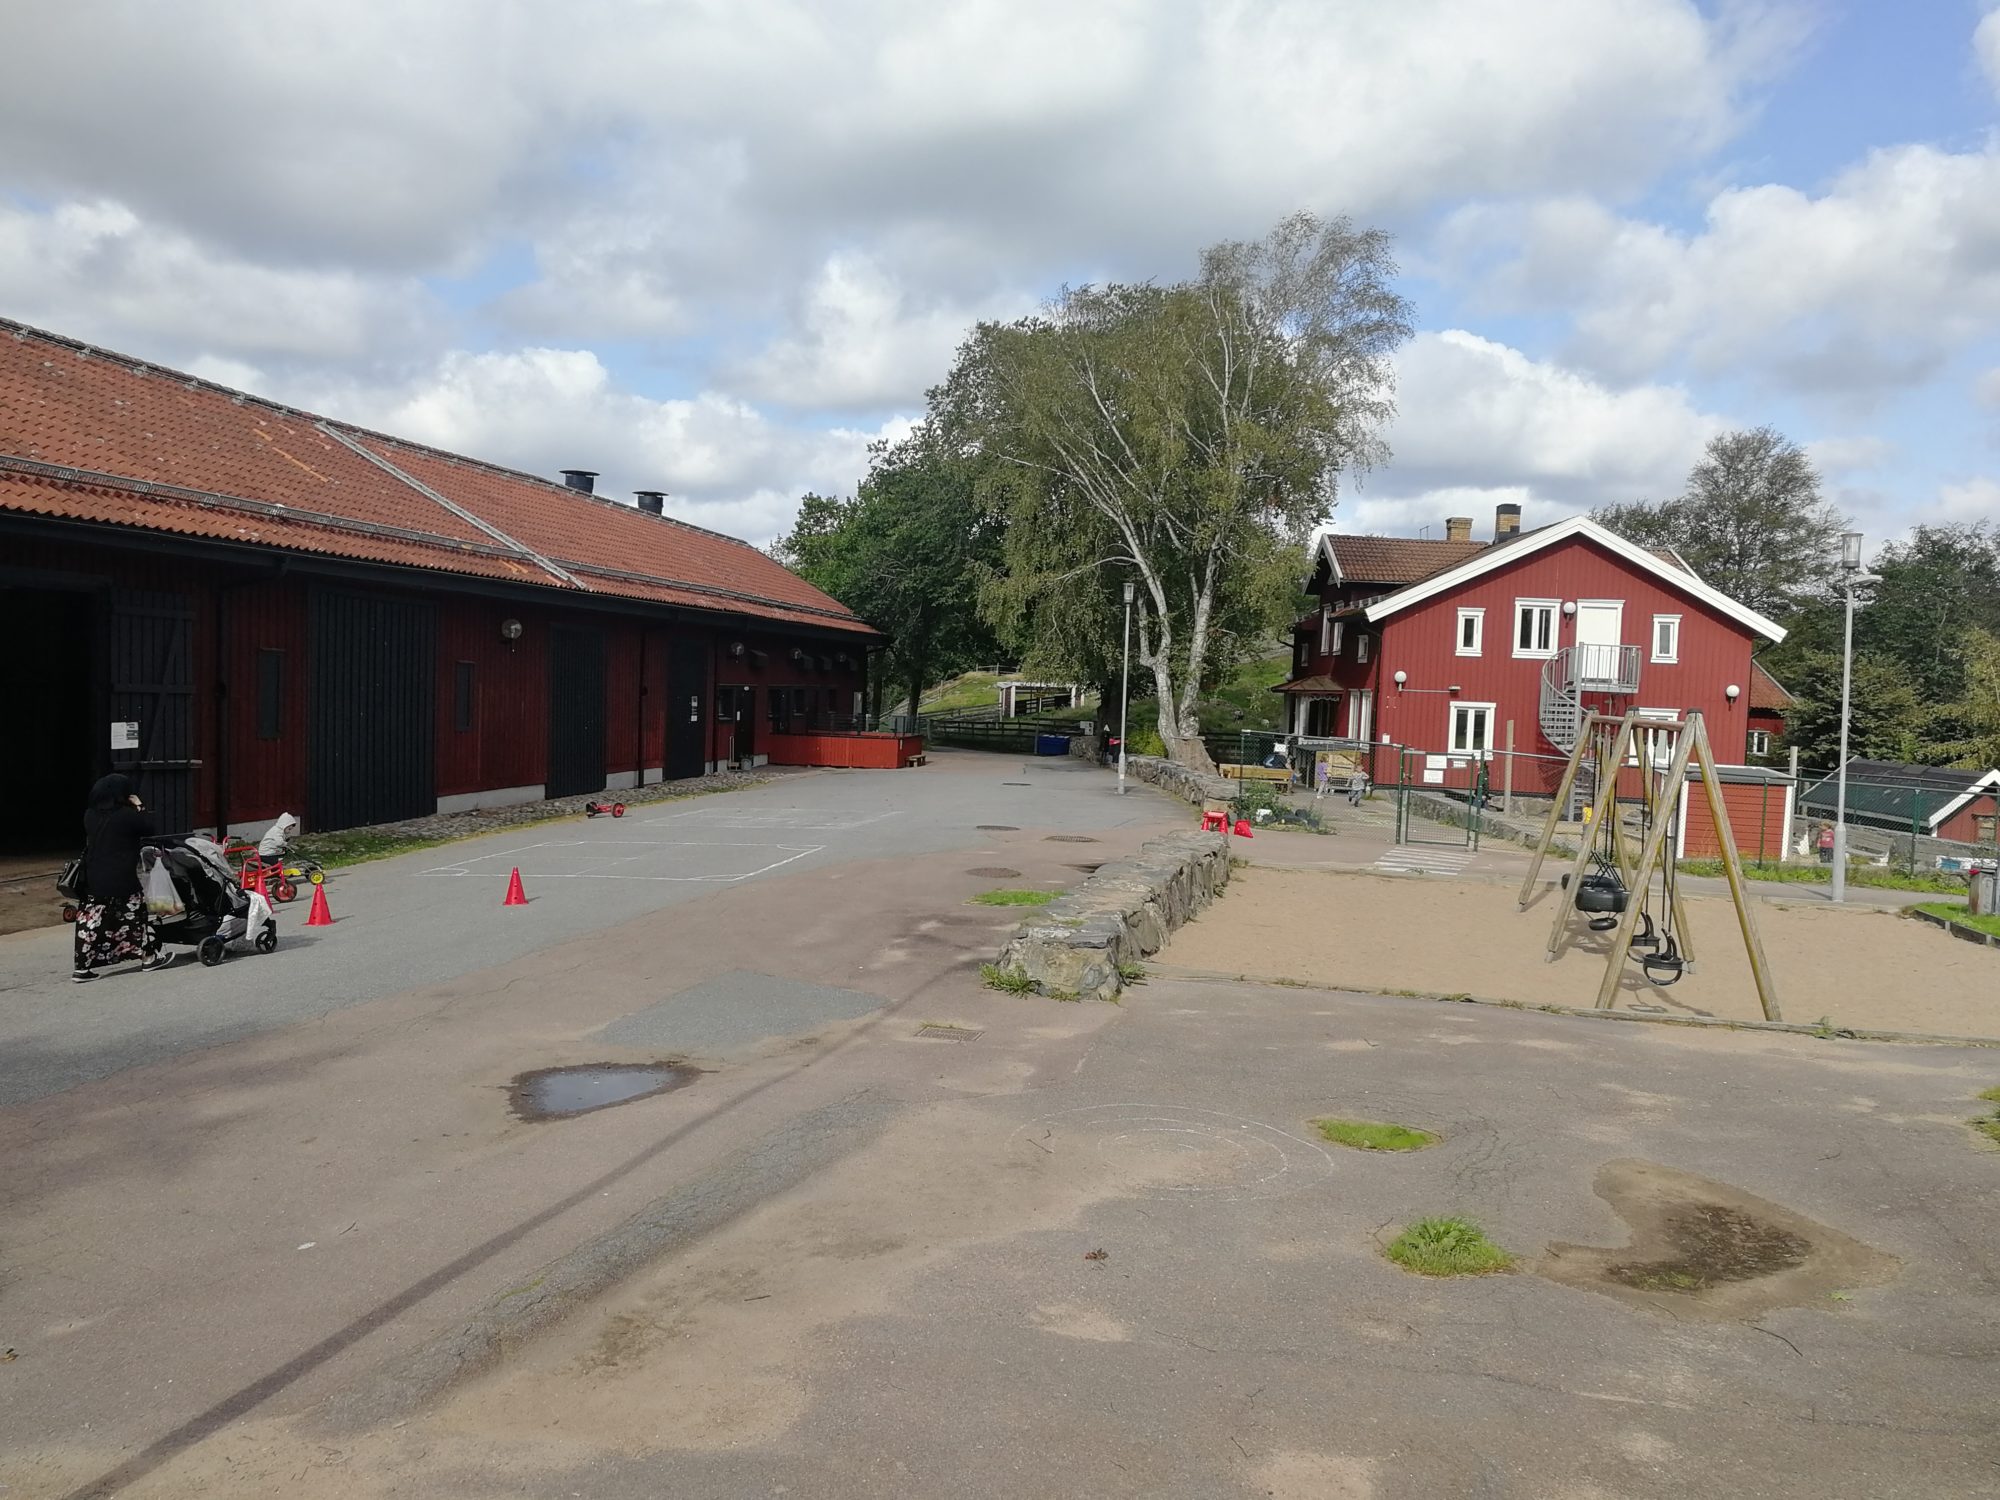 Gardening plots in Backa – Ideella Föreningen Ladan